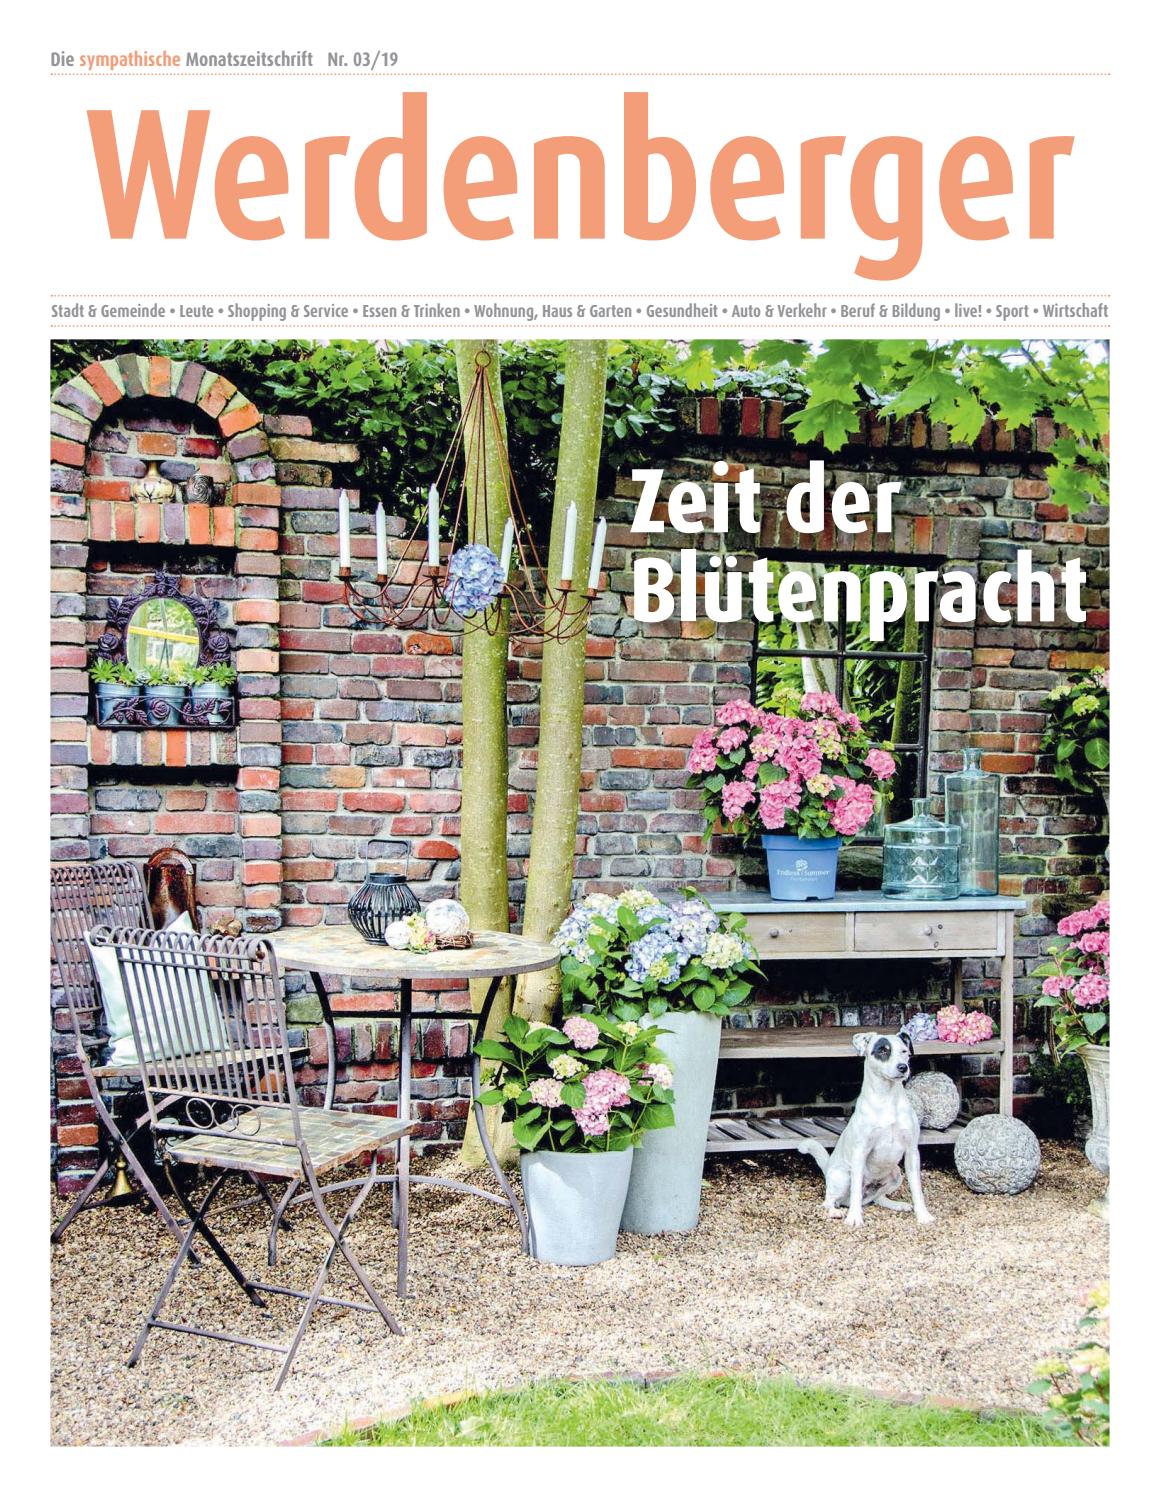 Gartenanlagen Ideen Best Of Werdenberger Nr 3 19 April 2019 by Lie Monat issuu